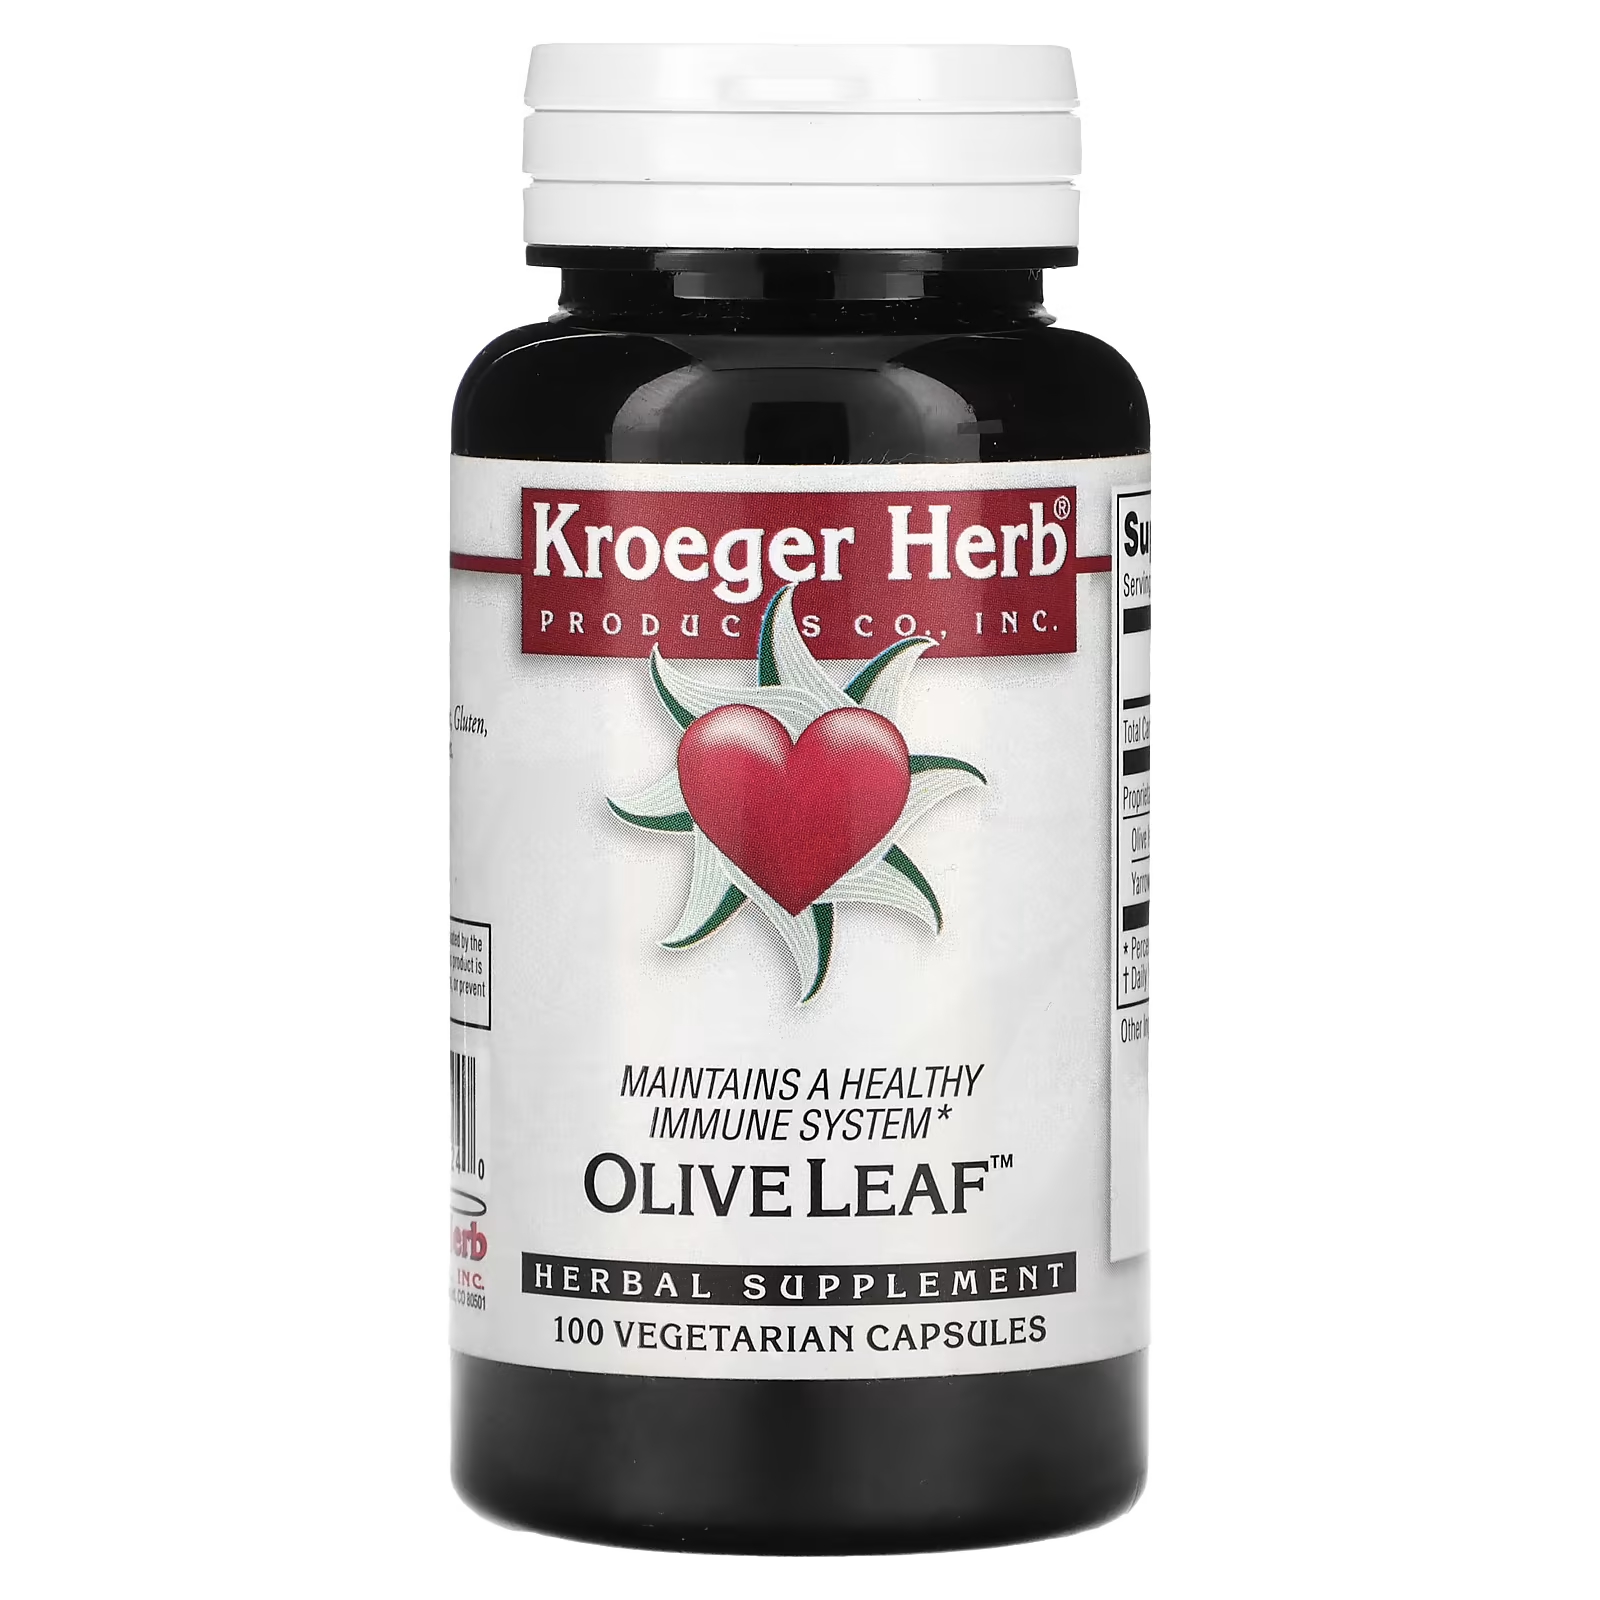 Растительная добавка Kroeger Herb Co оливковый лист, 100 капсул растительная добавка kroeger herb co балансировщик полярности 100 капсул